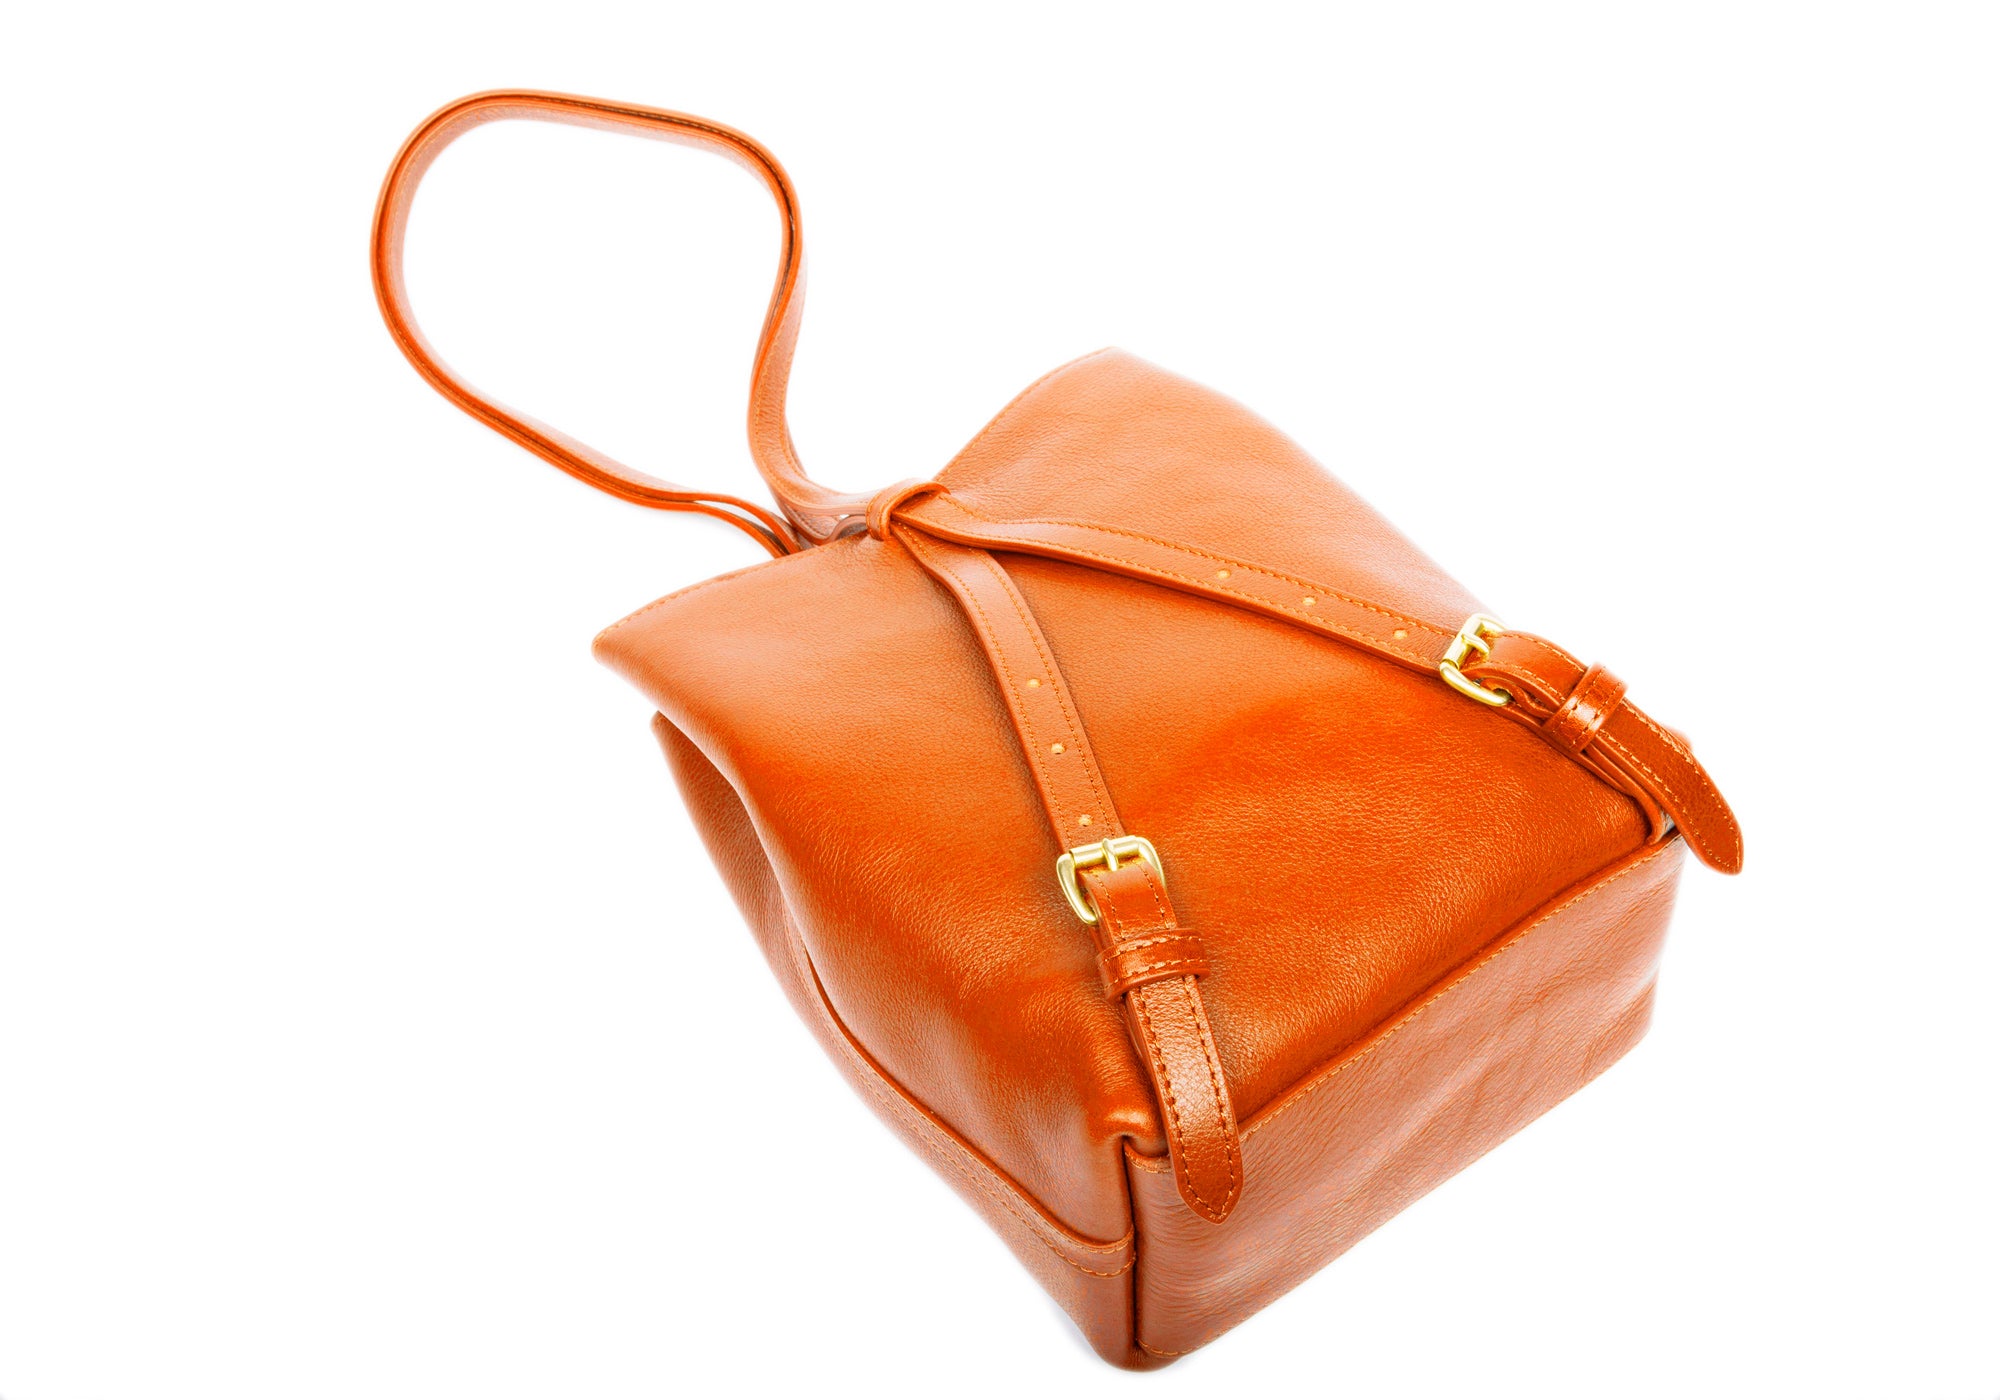 The Mini Sling Backpack Orange